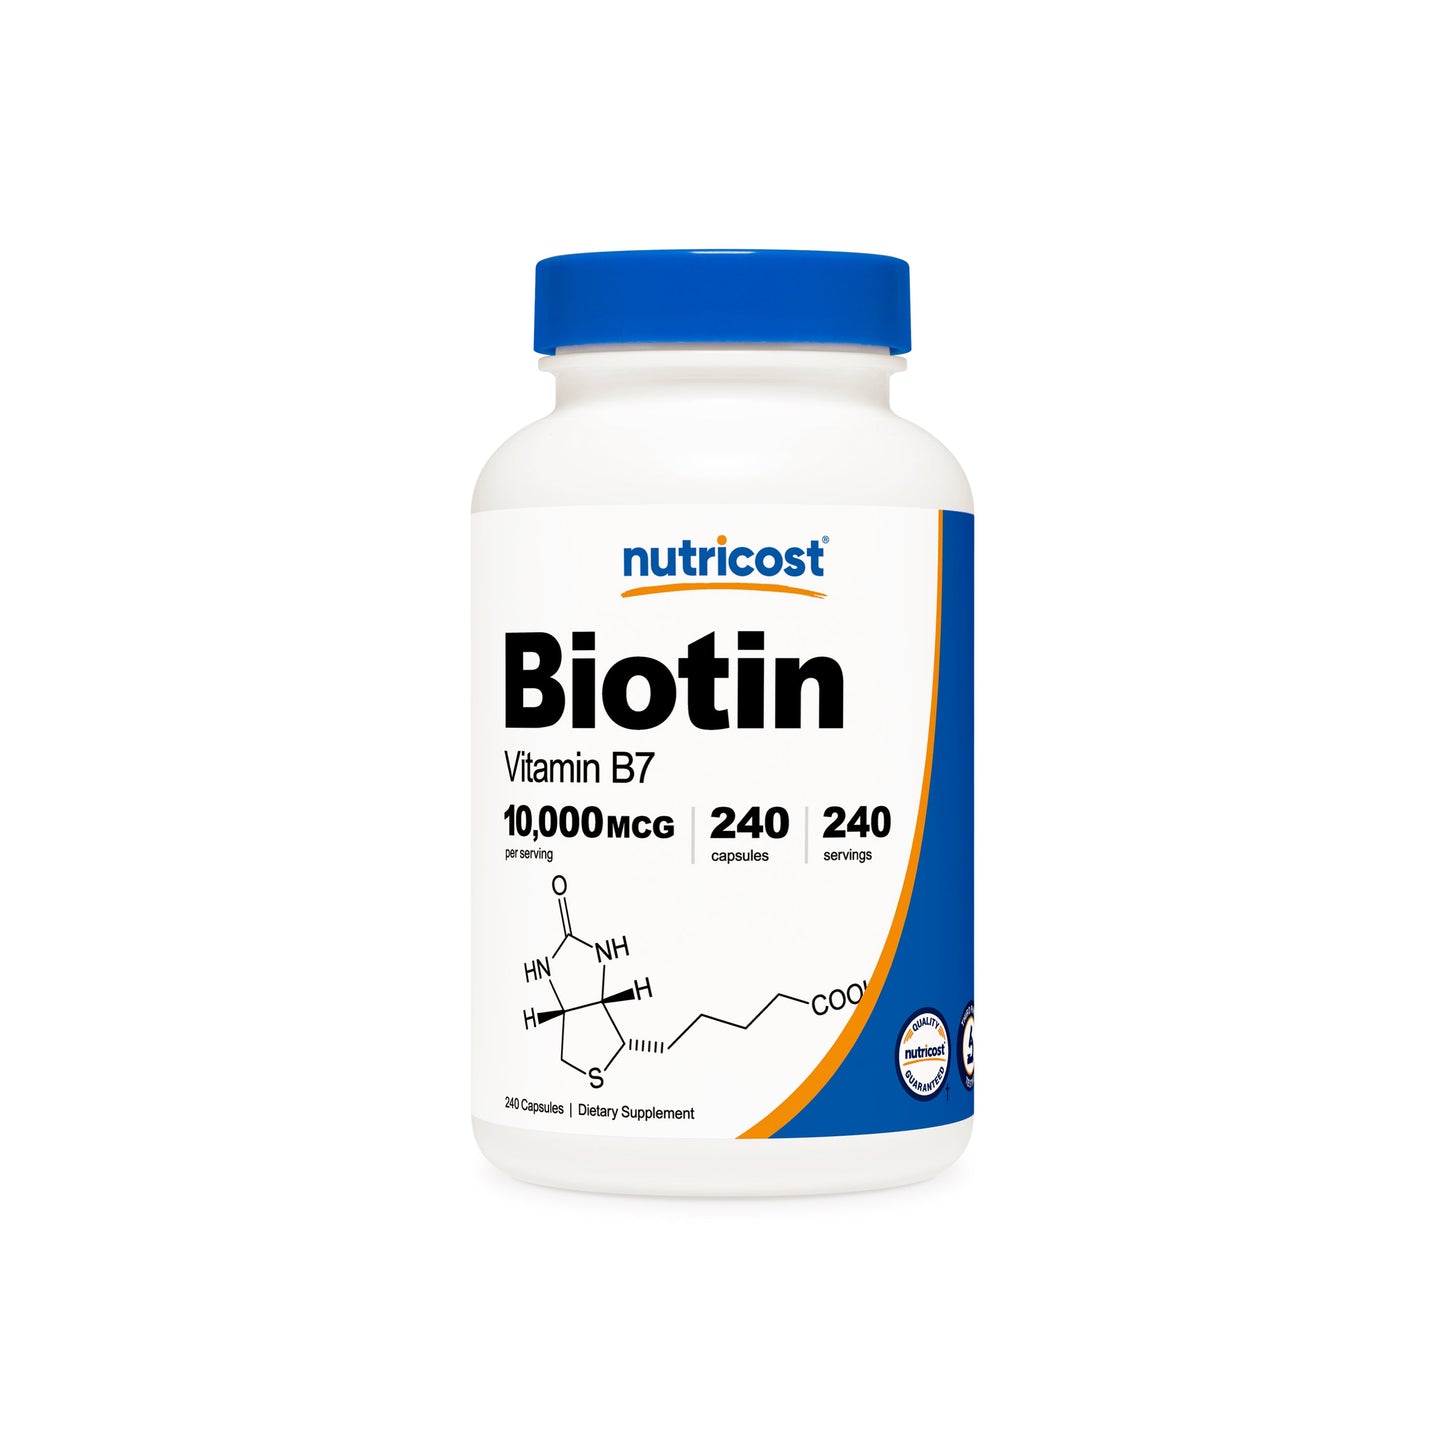 Nutricost Biotin Capsules